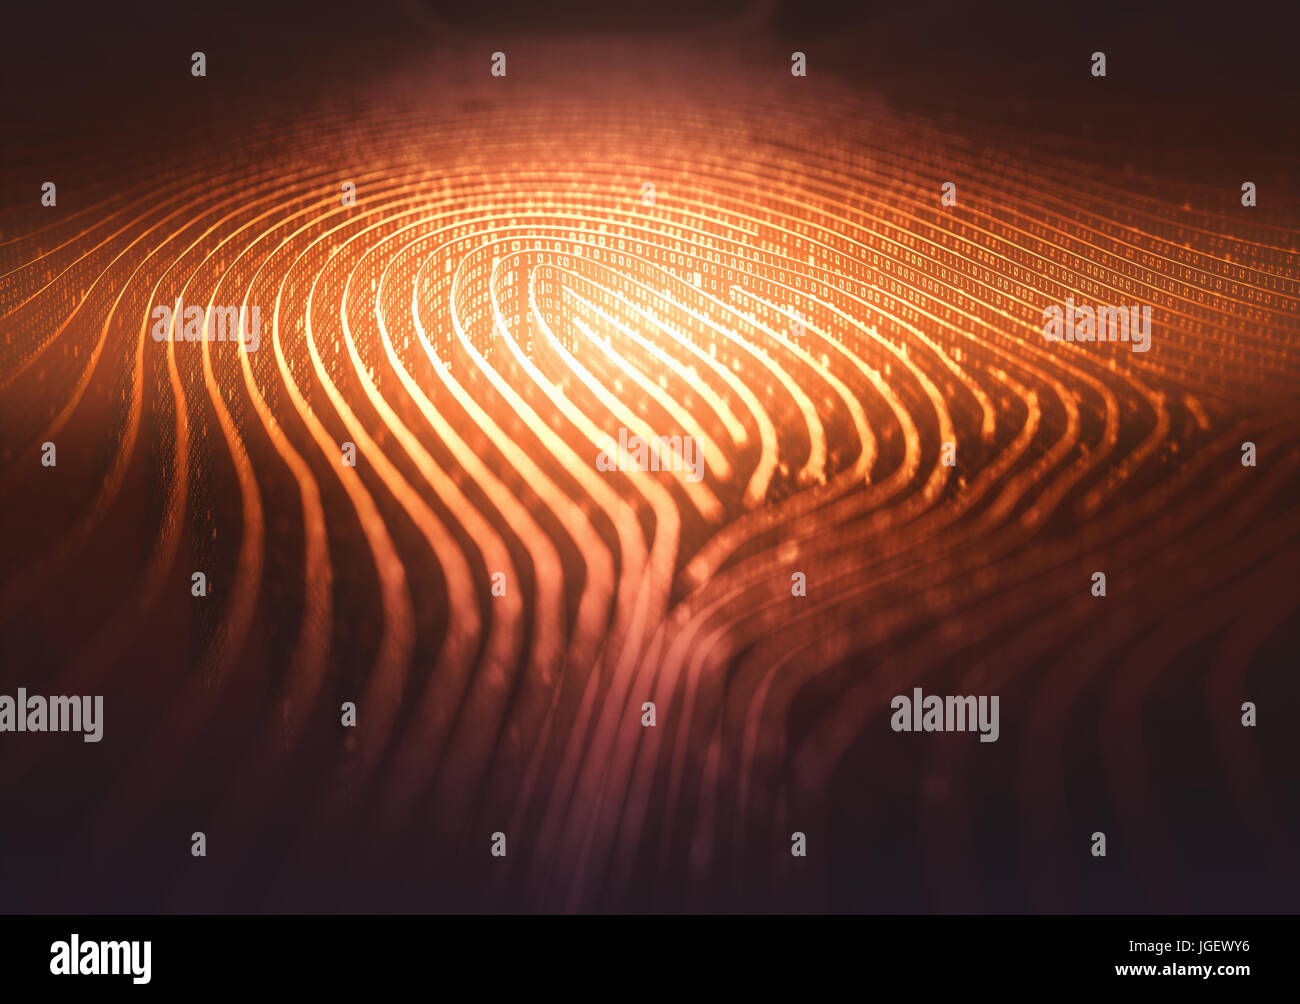 3D illustration. En empreintes digitales sous forme de labyrinthe, avec des codes binaires en référence à l'identité individuelle. Banque D'Images